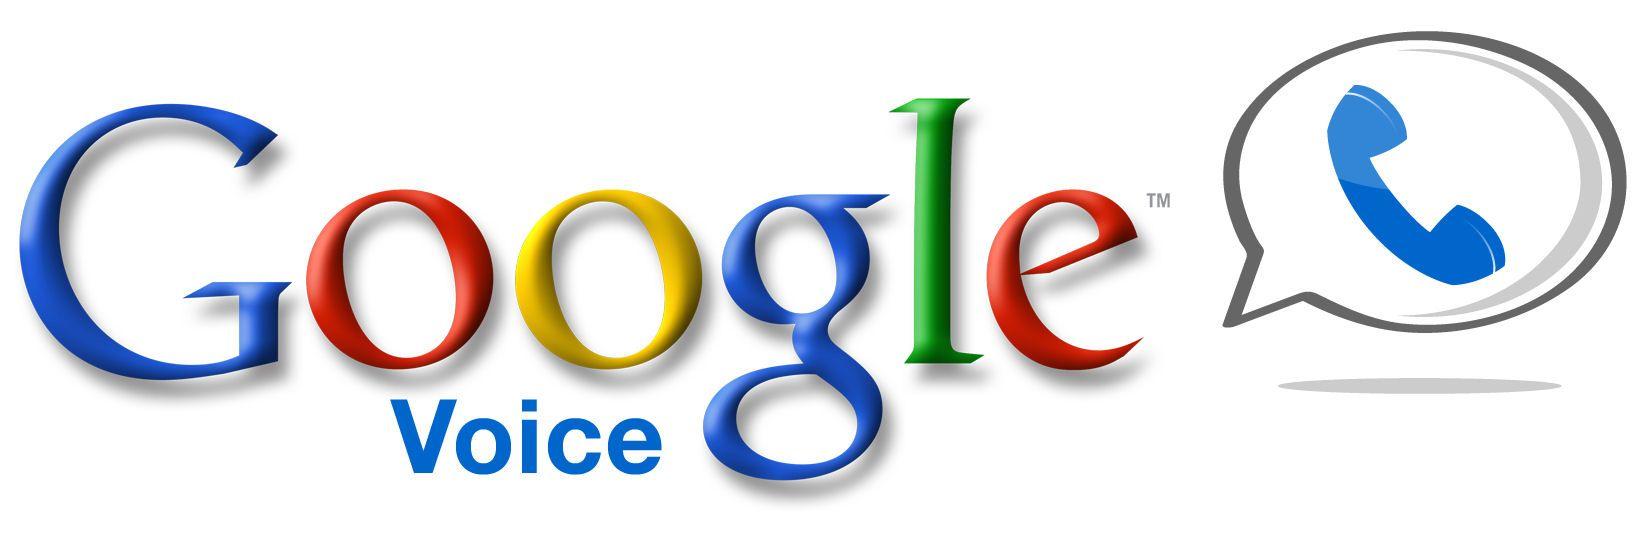 Google Voice Logo - Google voice Logos